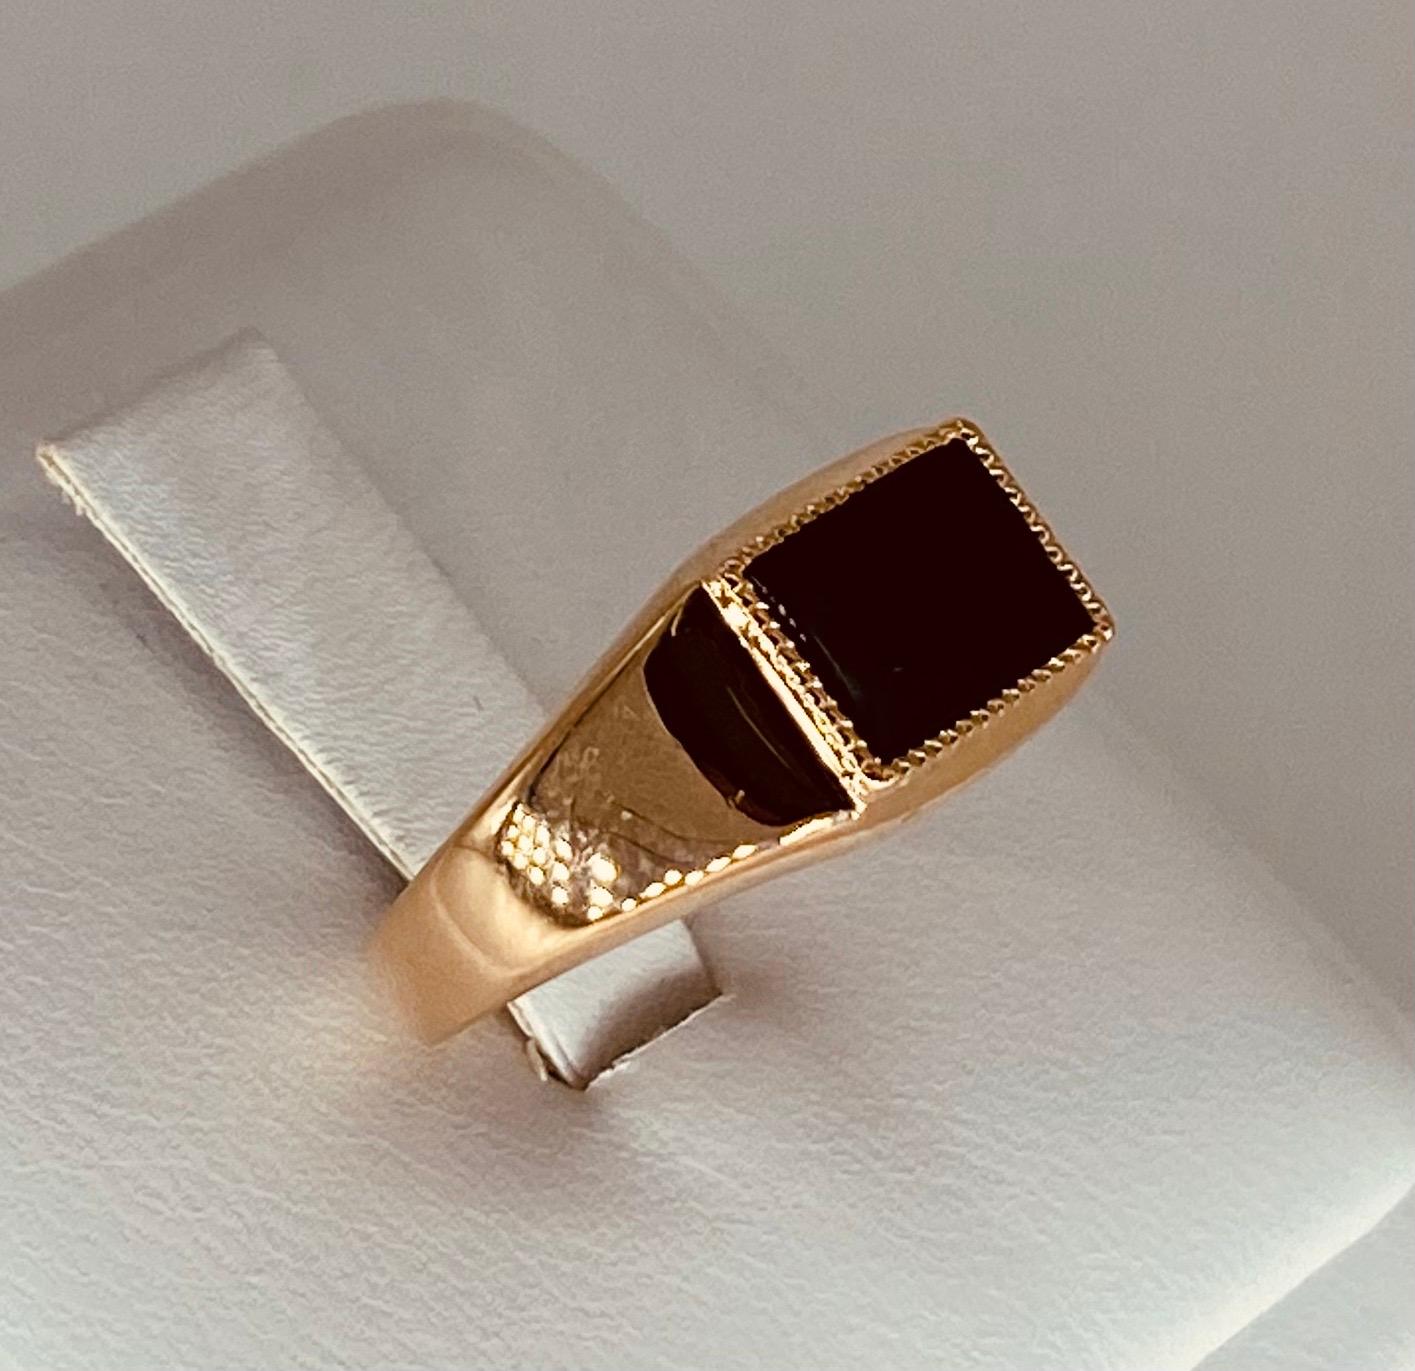 Retro Russian Gold Herren Onyx Siegelring 14k Rose Gold. Gestempelter authentischer russischer Goldring mit einem schönen Onyxstein in der Mitte. Der Ring ist eine Größe 7,5 und wiegt ca. 3,3 Gramm 585% Reinheit Gold. Dieser Ring kann nicht in der